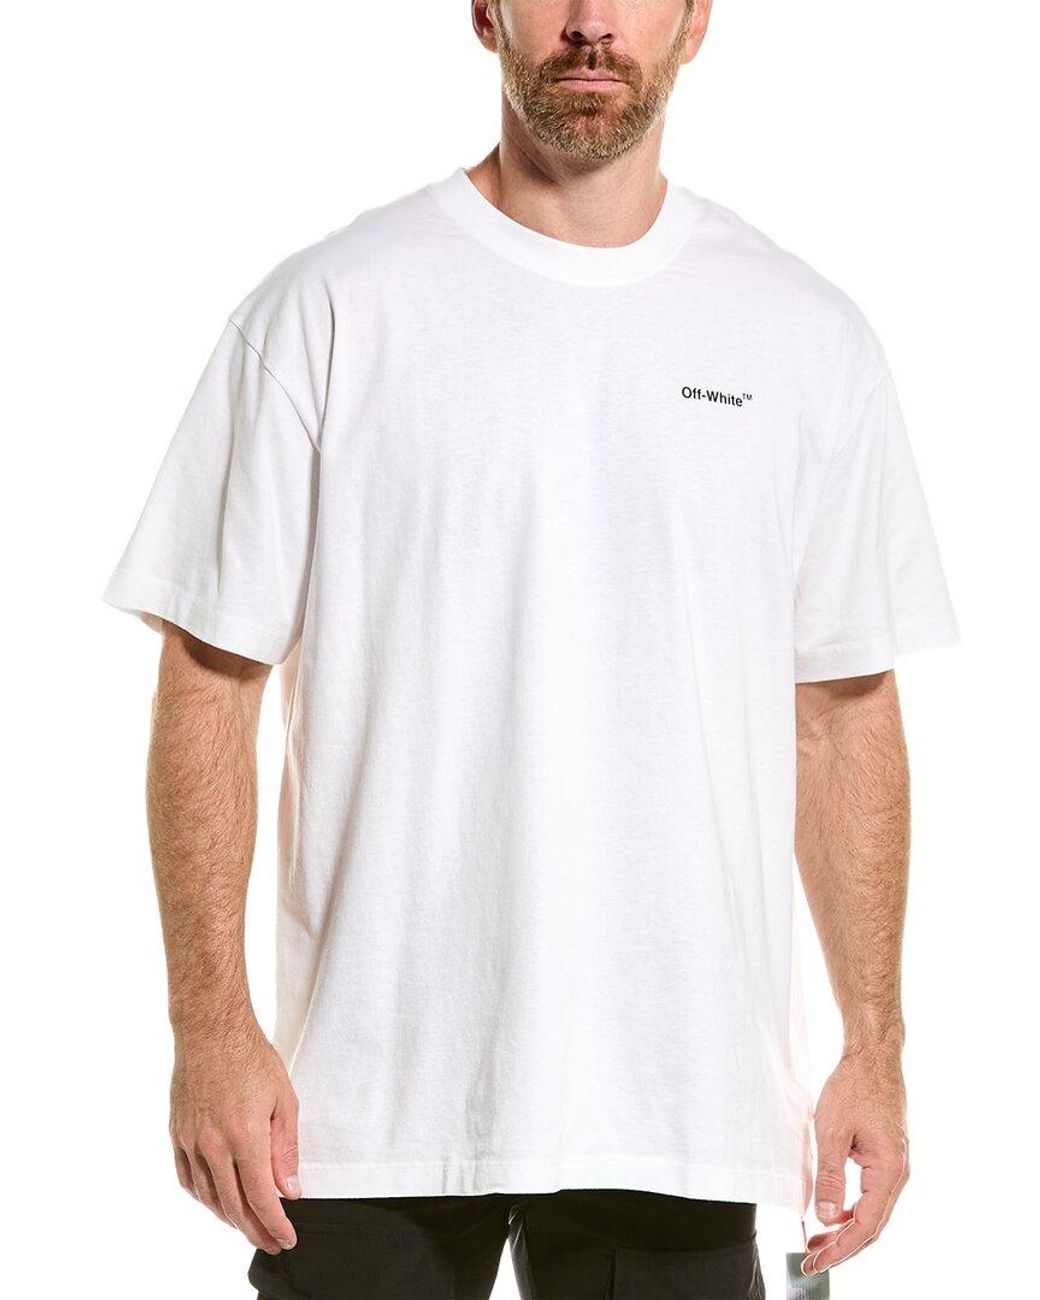 Off-White c/o Virgil Abloh Off-whitetm T-shirt for Men